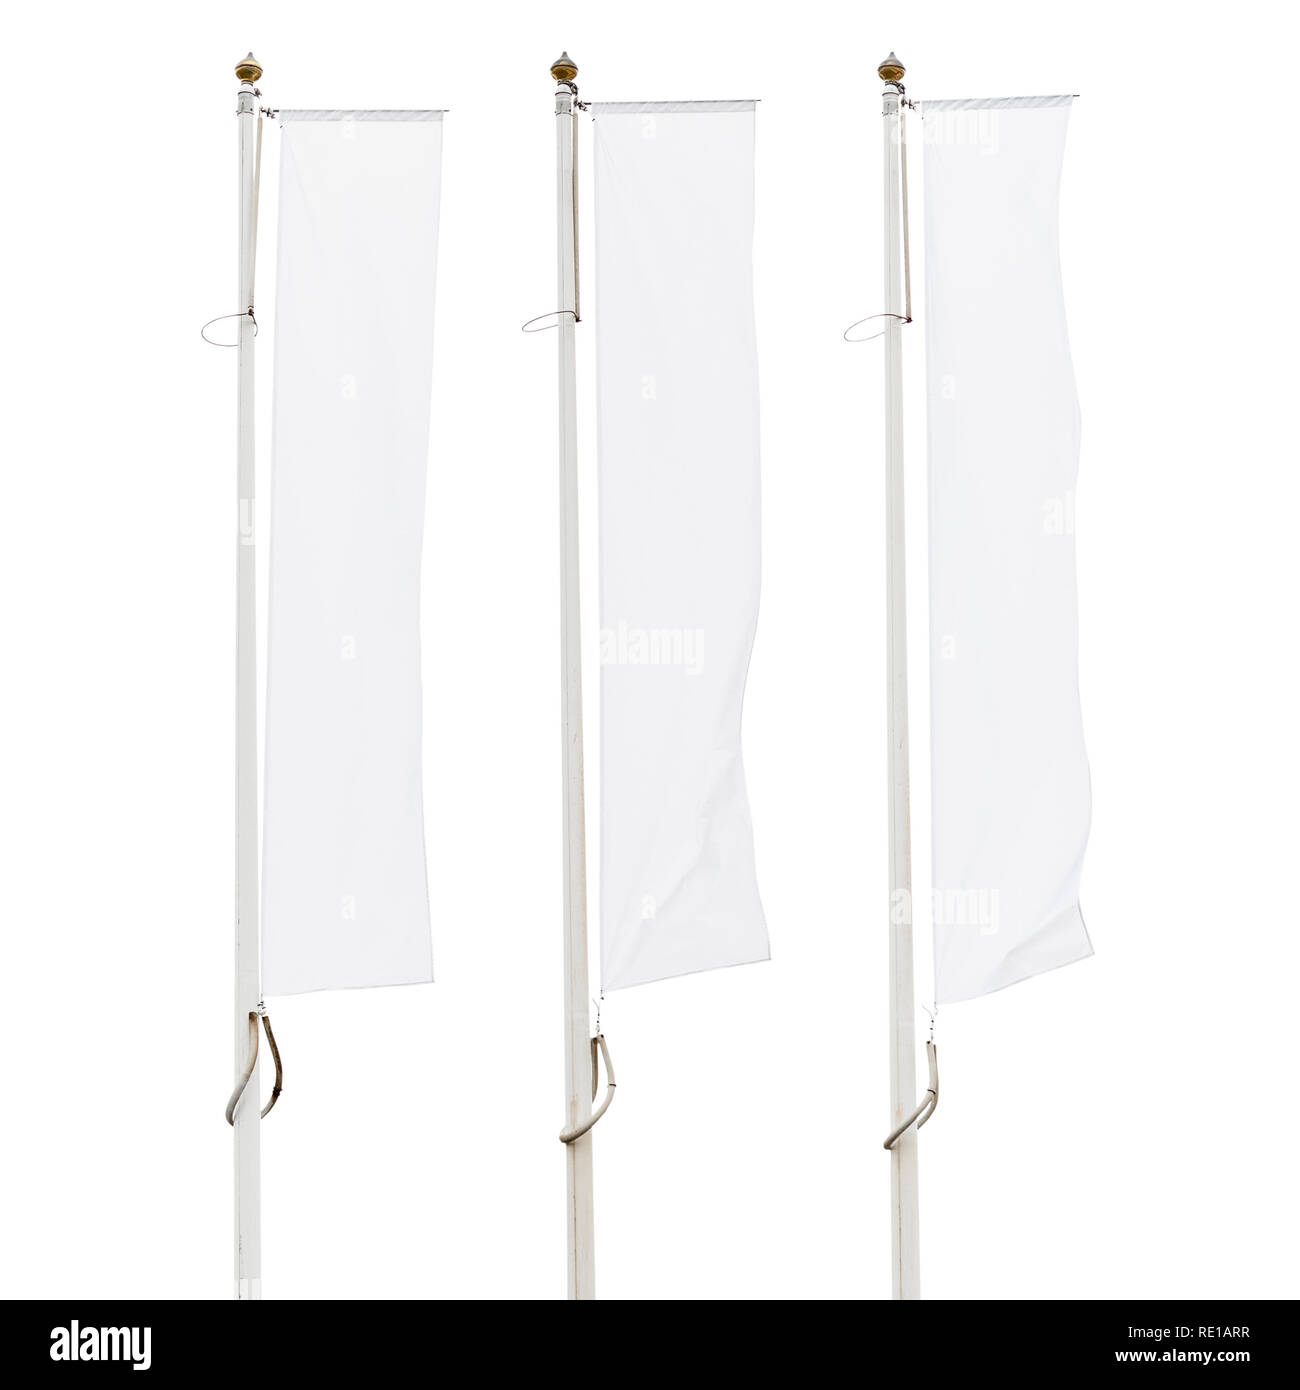 Drei leere weiße Fahnen Fahnenmasten auf weißem Hintergrund, Corporate Flagge Mockup zu Ad-Logo, Text oder Symbol, Firma Identität Flagge Vorlage Stockfoto